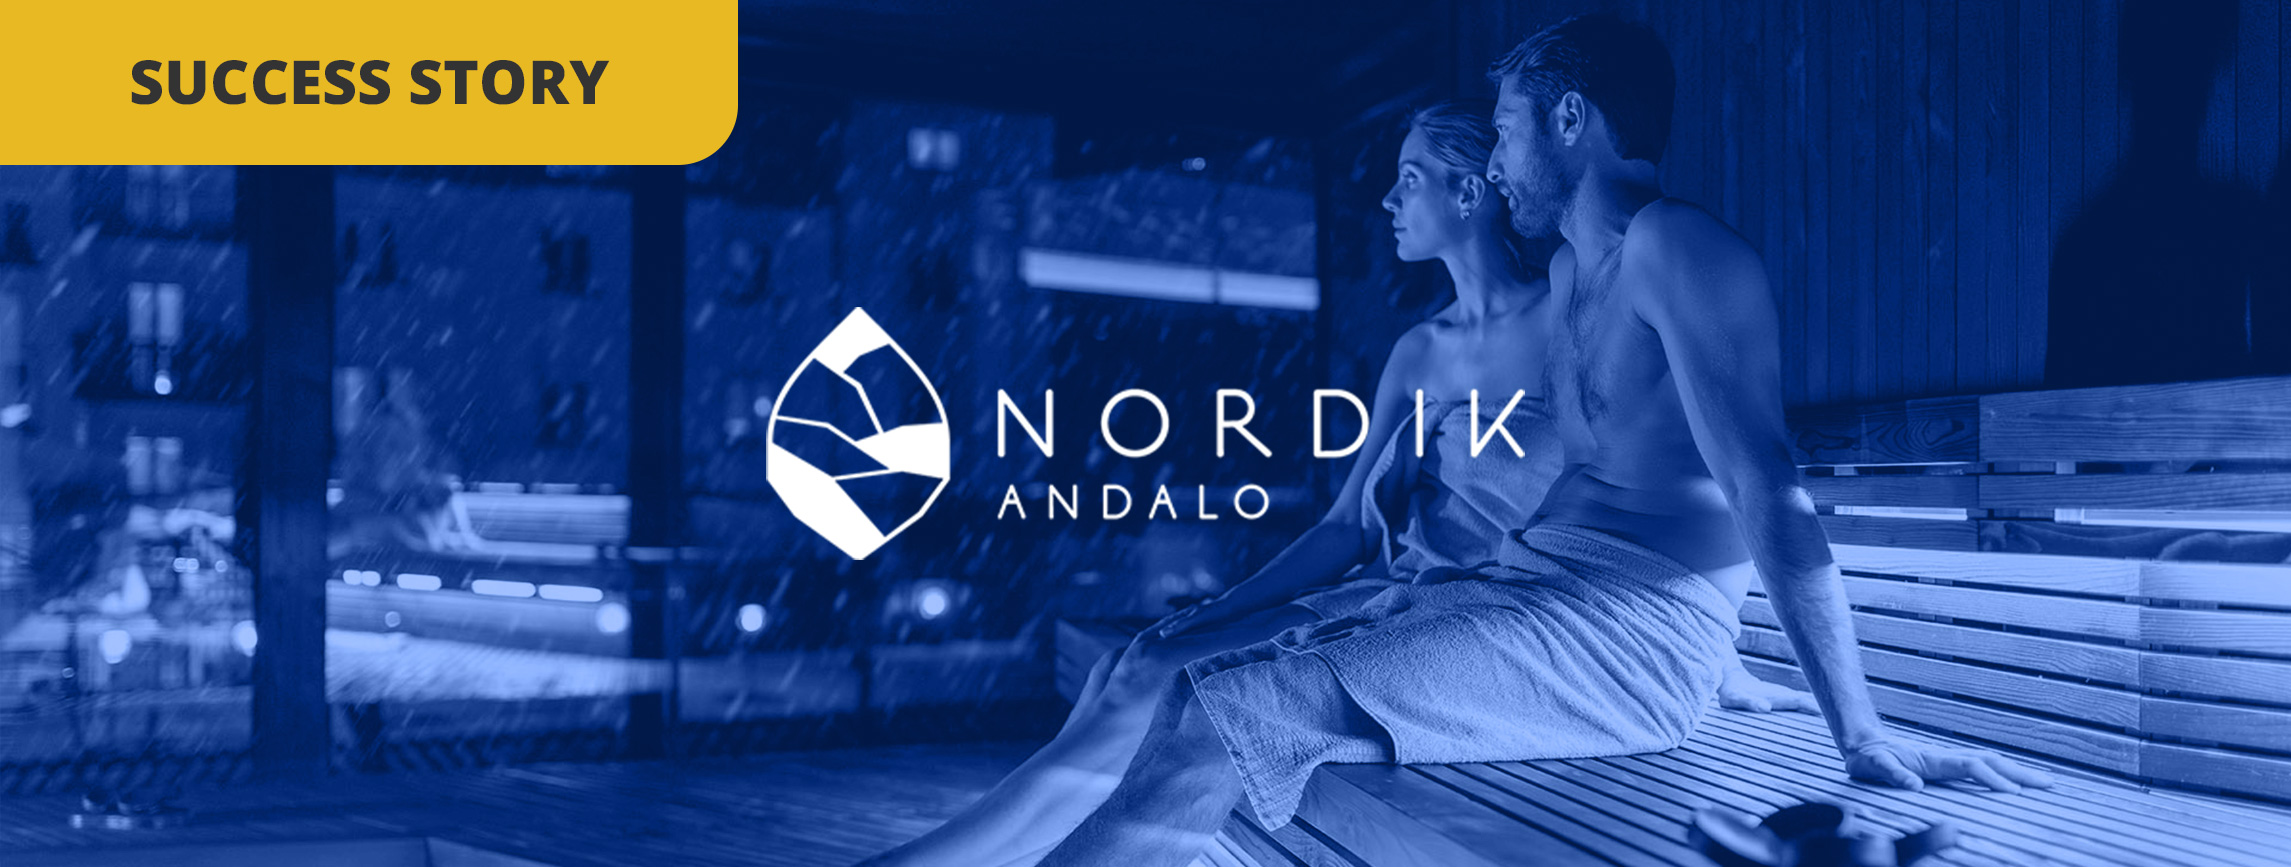 Come l'Hotel Nordik utilizza la gestione delle recensioni e dei feedback per raggiungere il primo posto su Tripadvisor